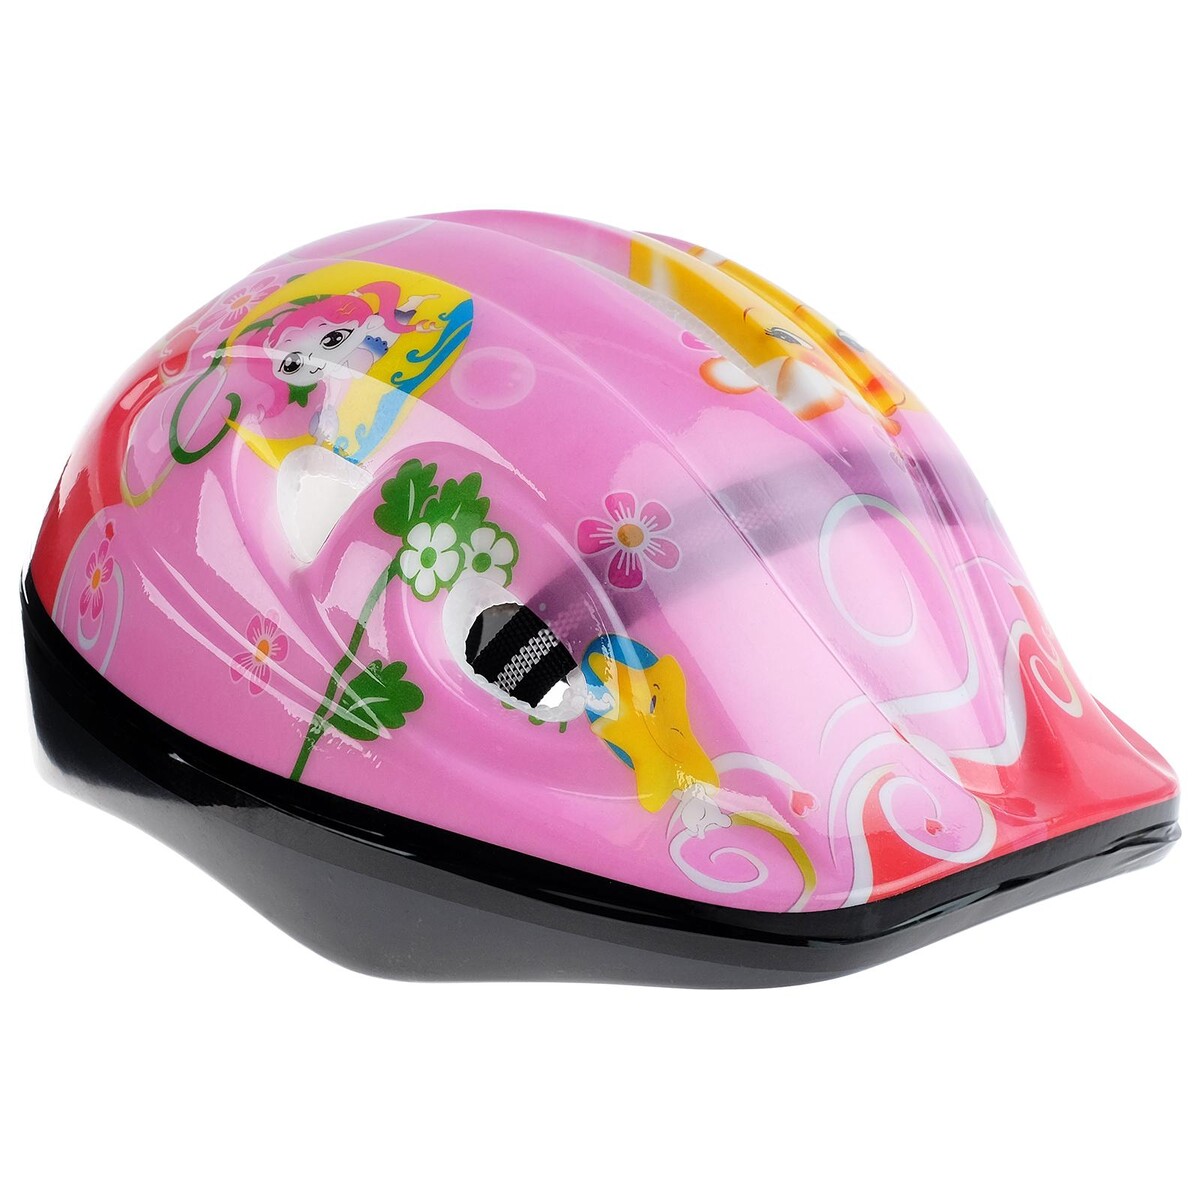 Шлем защитный детский onlytop ot-501, обхват 52-54 см, цвет розовый шлем защитный детский onlytop ot 502 обхват 52 54 см красный